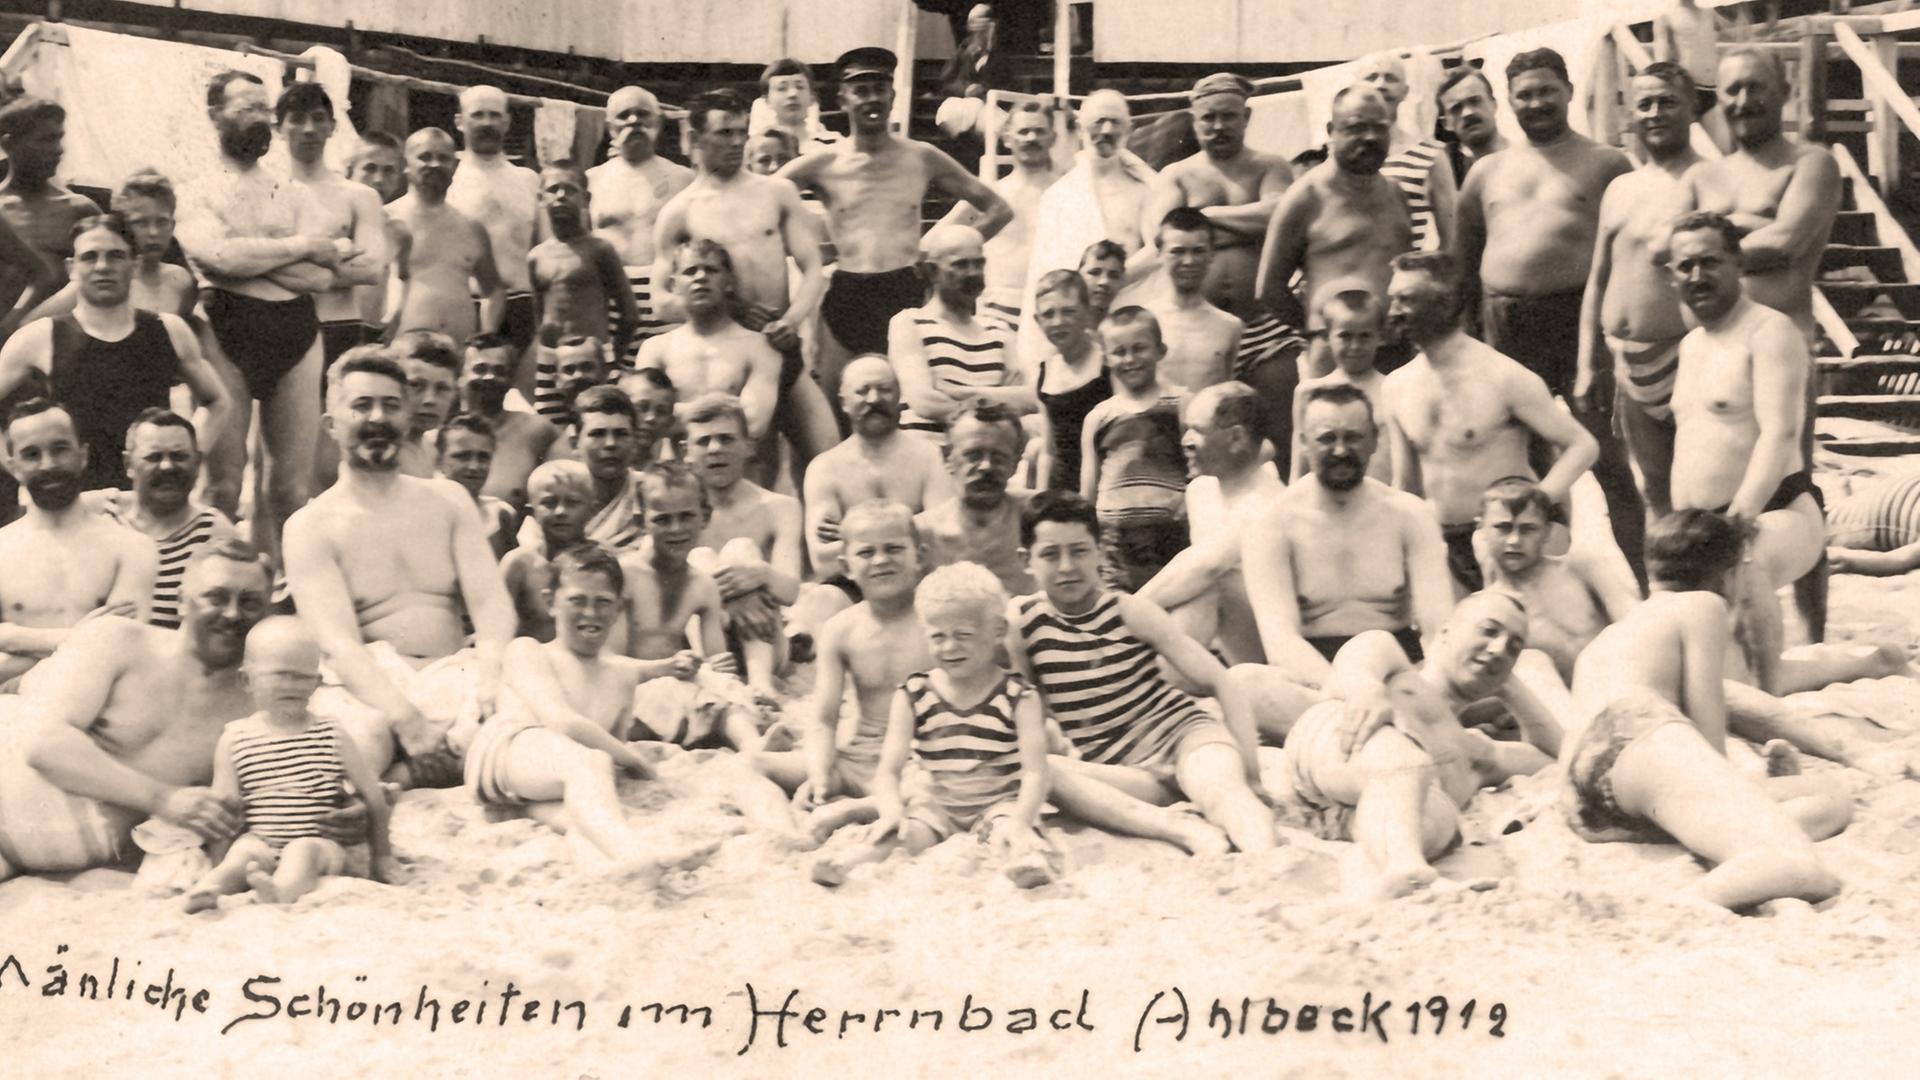 Die historische Fotografie mit dem Schriftzug "Mänliche Schönheiten im Herrenbad Ahlbeck 1912" aus dem Jahr 1912 zeigt Männer und Kinder im Herrenbad von Ahlbeck, Ostseebad, auf der Insel Usedom.